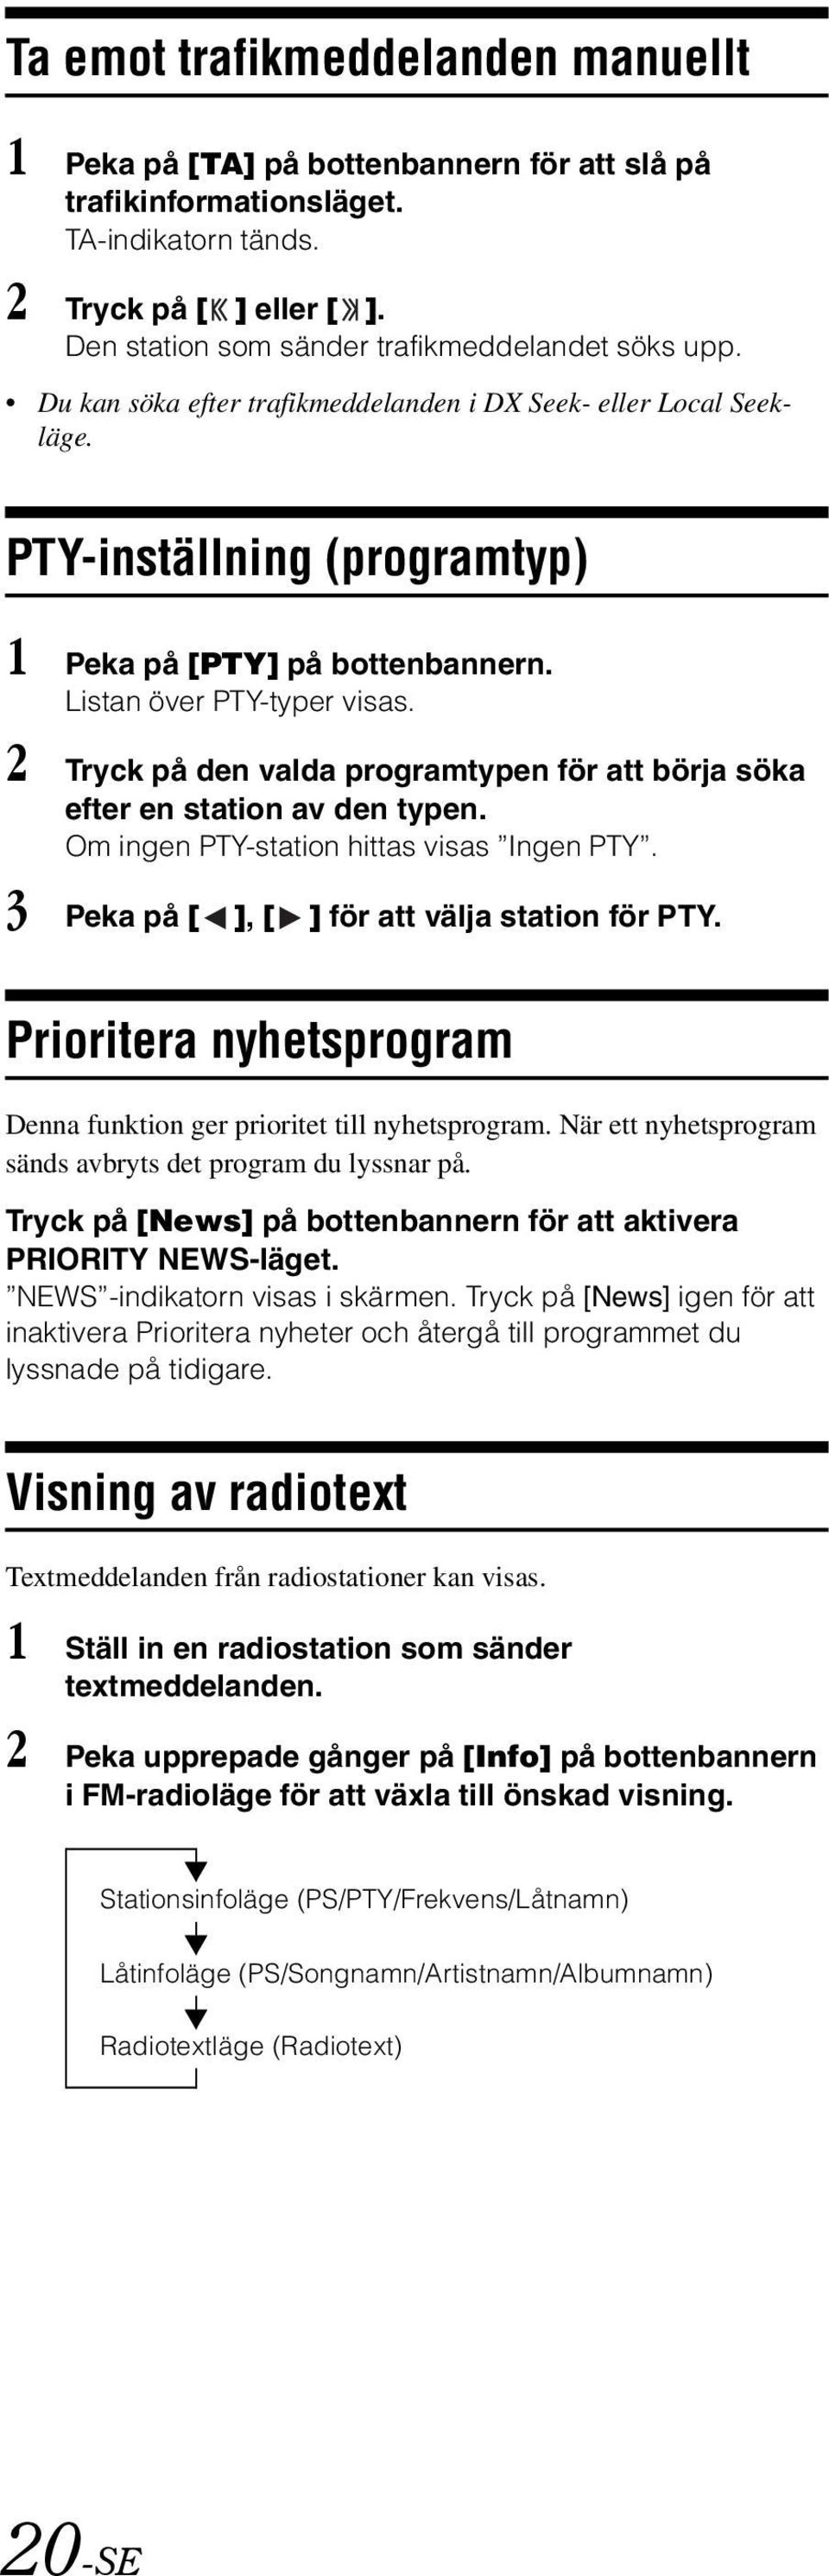 Listan över PTY-typer visas. 2 Tryck på den valda programtypen för att börja söka efter en station av den typen. Om ingen PTY-station hittas visas Ingen PTY.